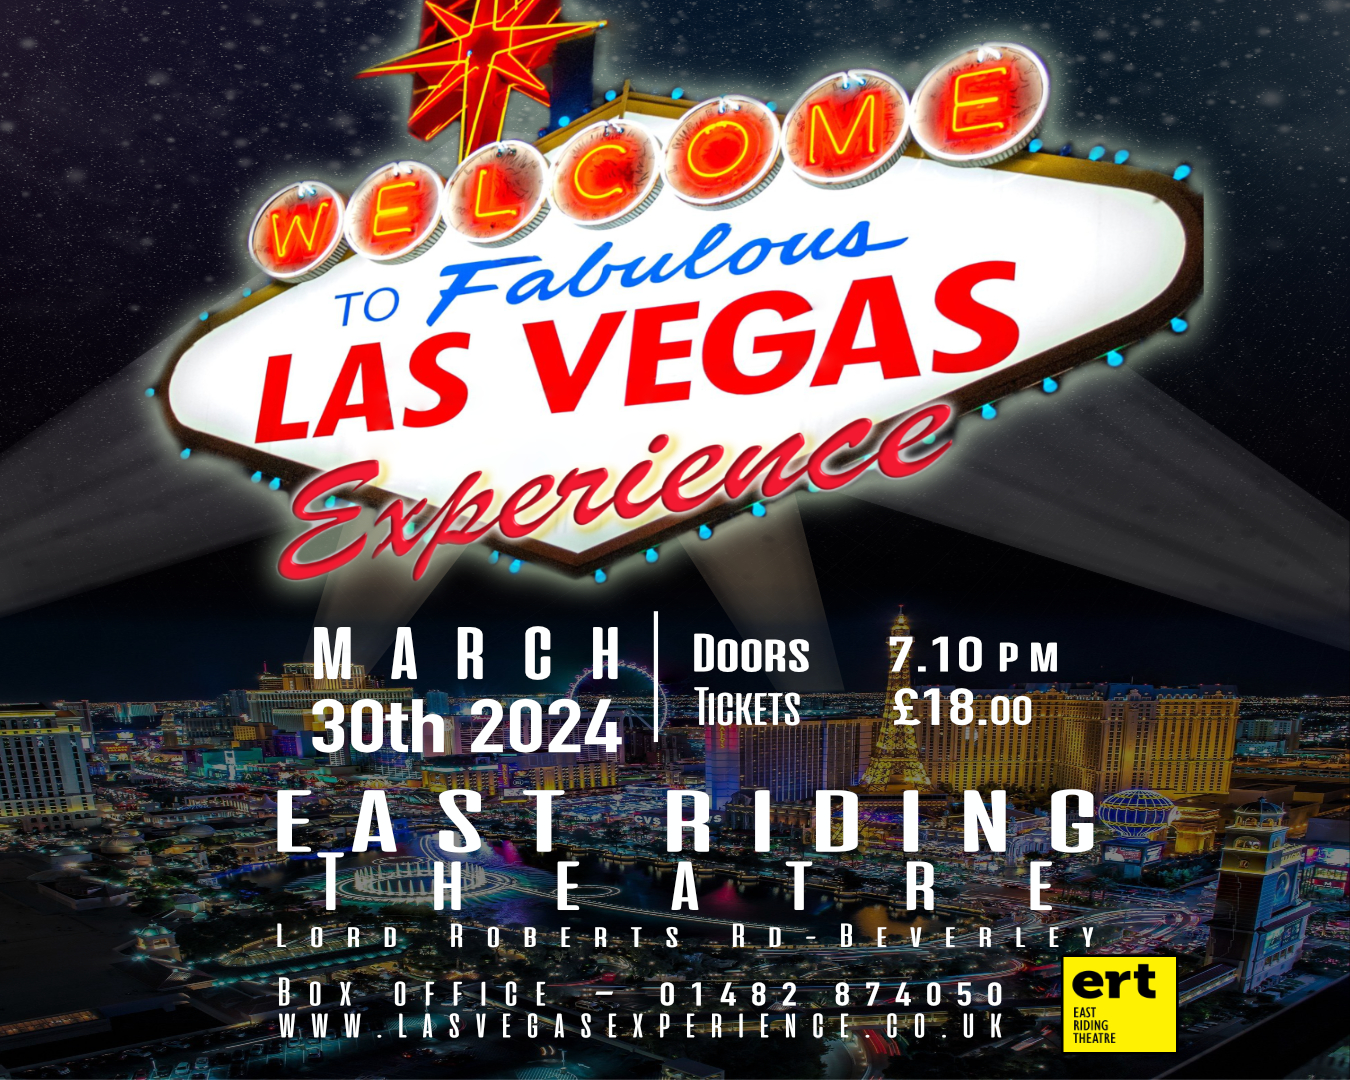 The Las Vegas Experience